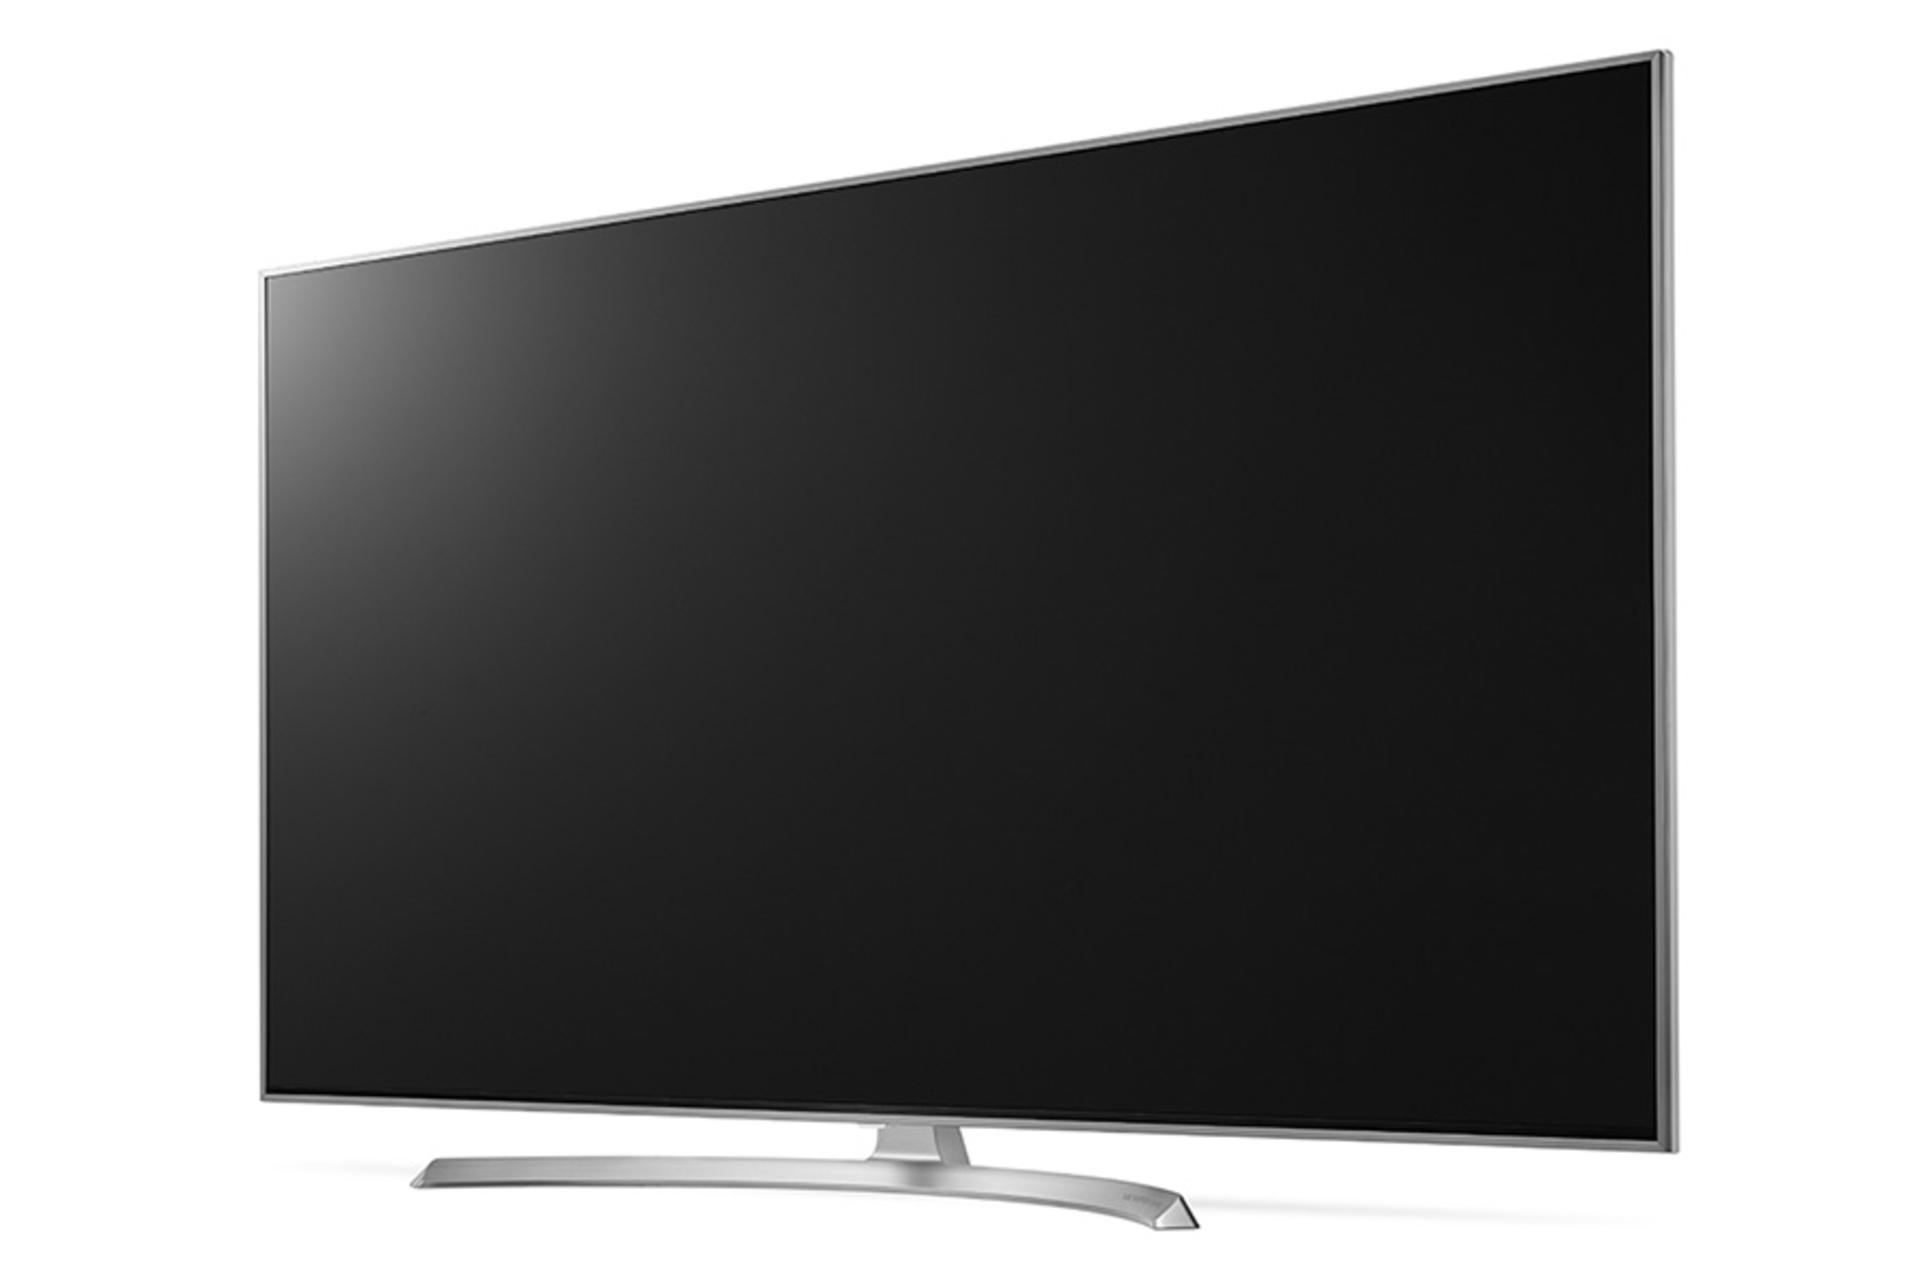 نمای نیمرخ تلویزیون ال جی SJ8000 مدل 55 اینچ با صفحه خاموش